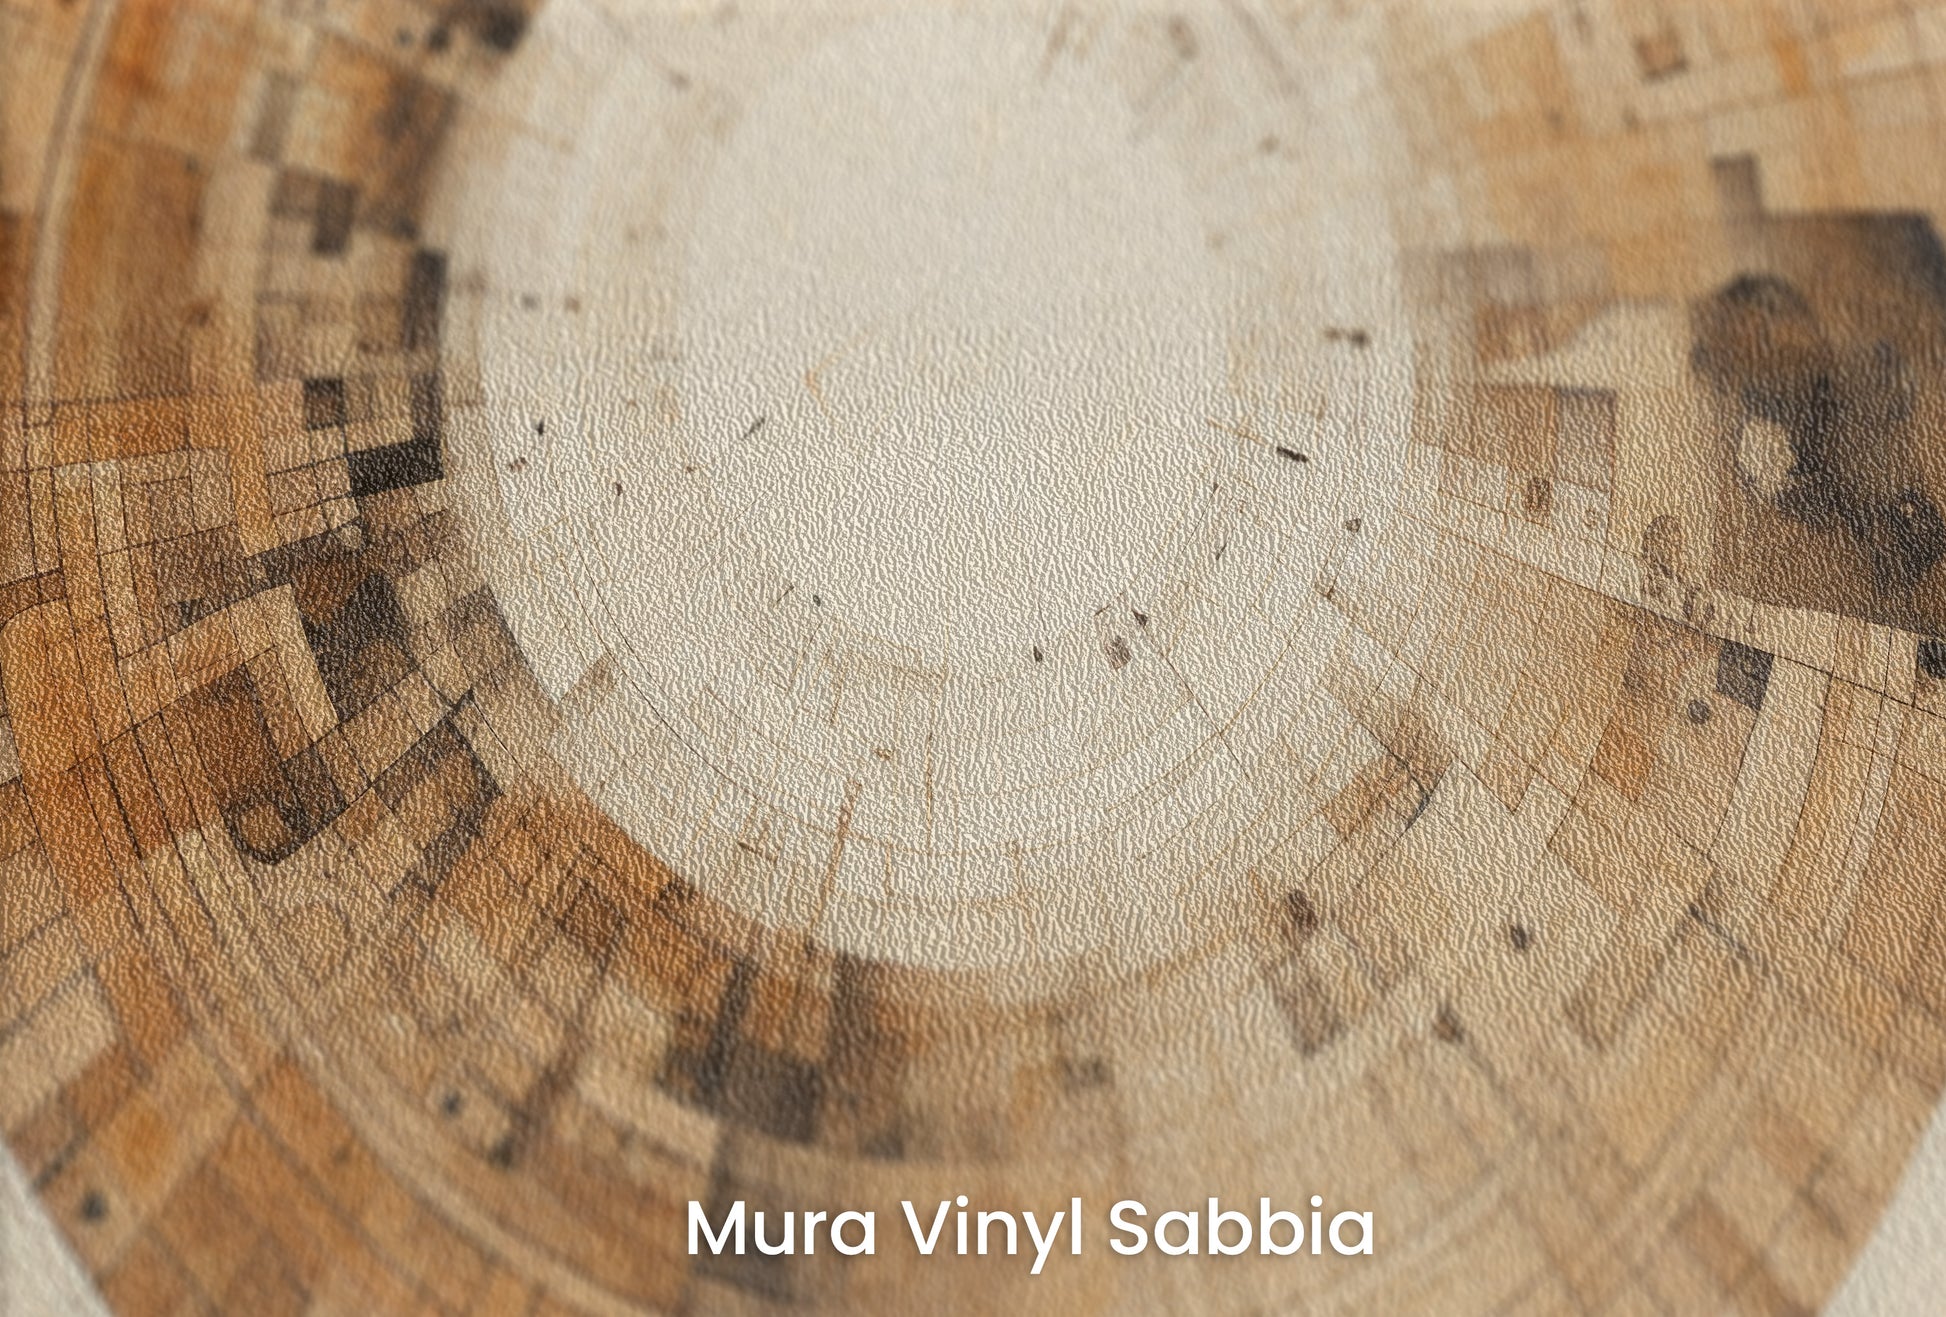 Zbliżenie na artystyczną fototapetę o nazwie INDUSTRIAL REVOLUTION CIRCULARITY na podłożu Mura Vinyl Sabbia struktura grubego ziarna piasku.